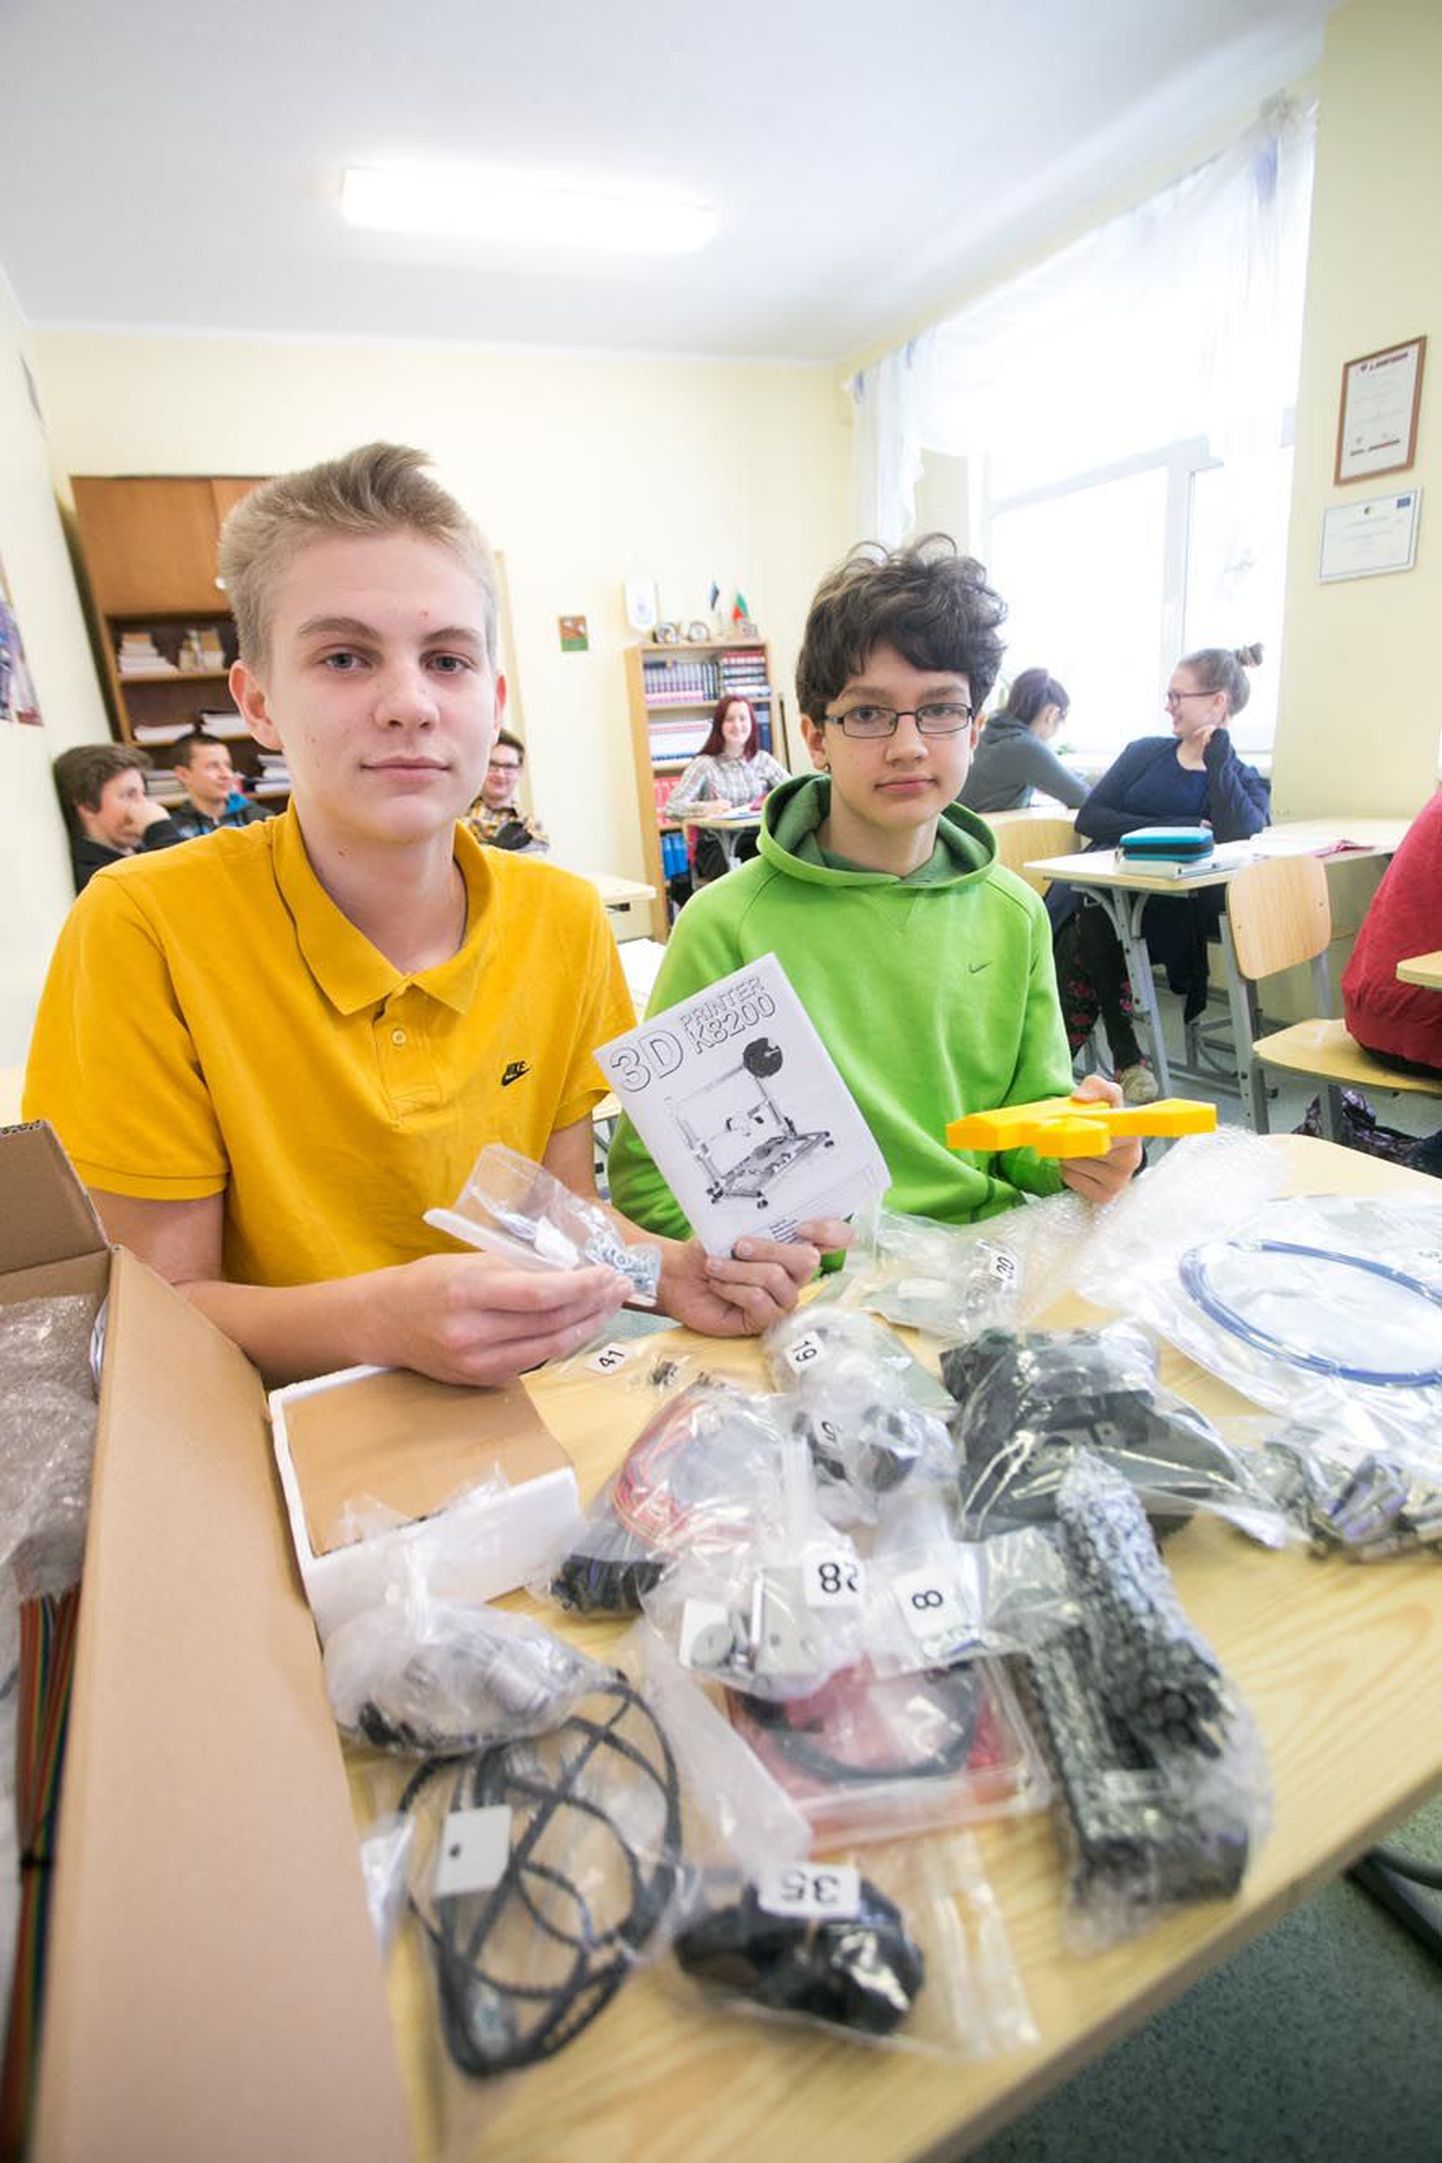 Väätsa koolipoisid Sten Perillus (vasakul) ja Sten Erik Tuuleveski võitsid tuleviku õppehoone kavandiga koolile 3D-printeri, millest saab kolmemõõtmeliste esemetena välja printida 20 × 20 sentimeetri suuruseid asju.